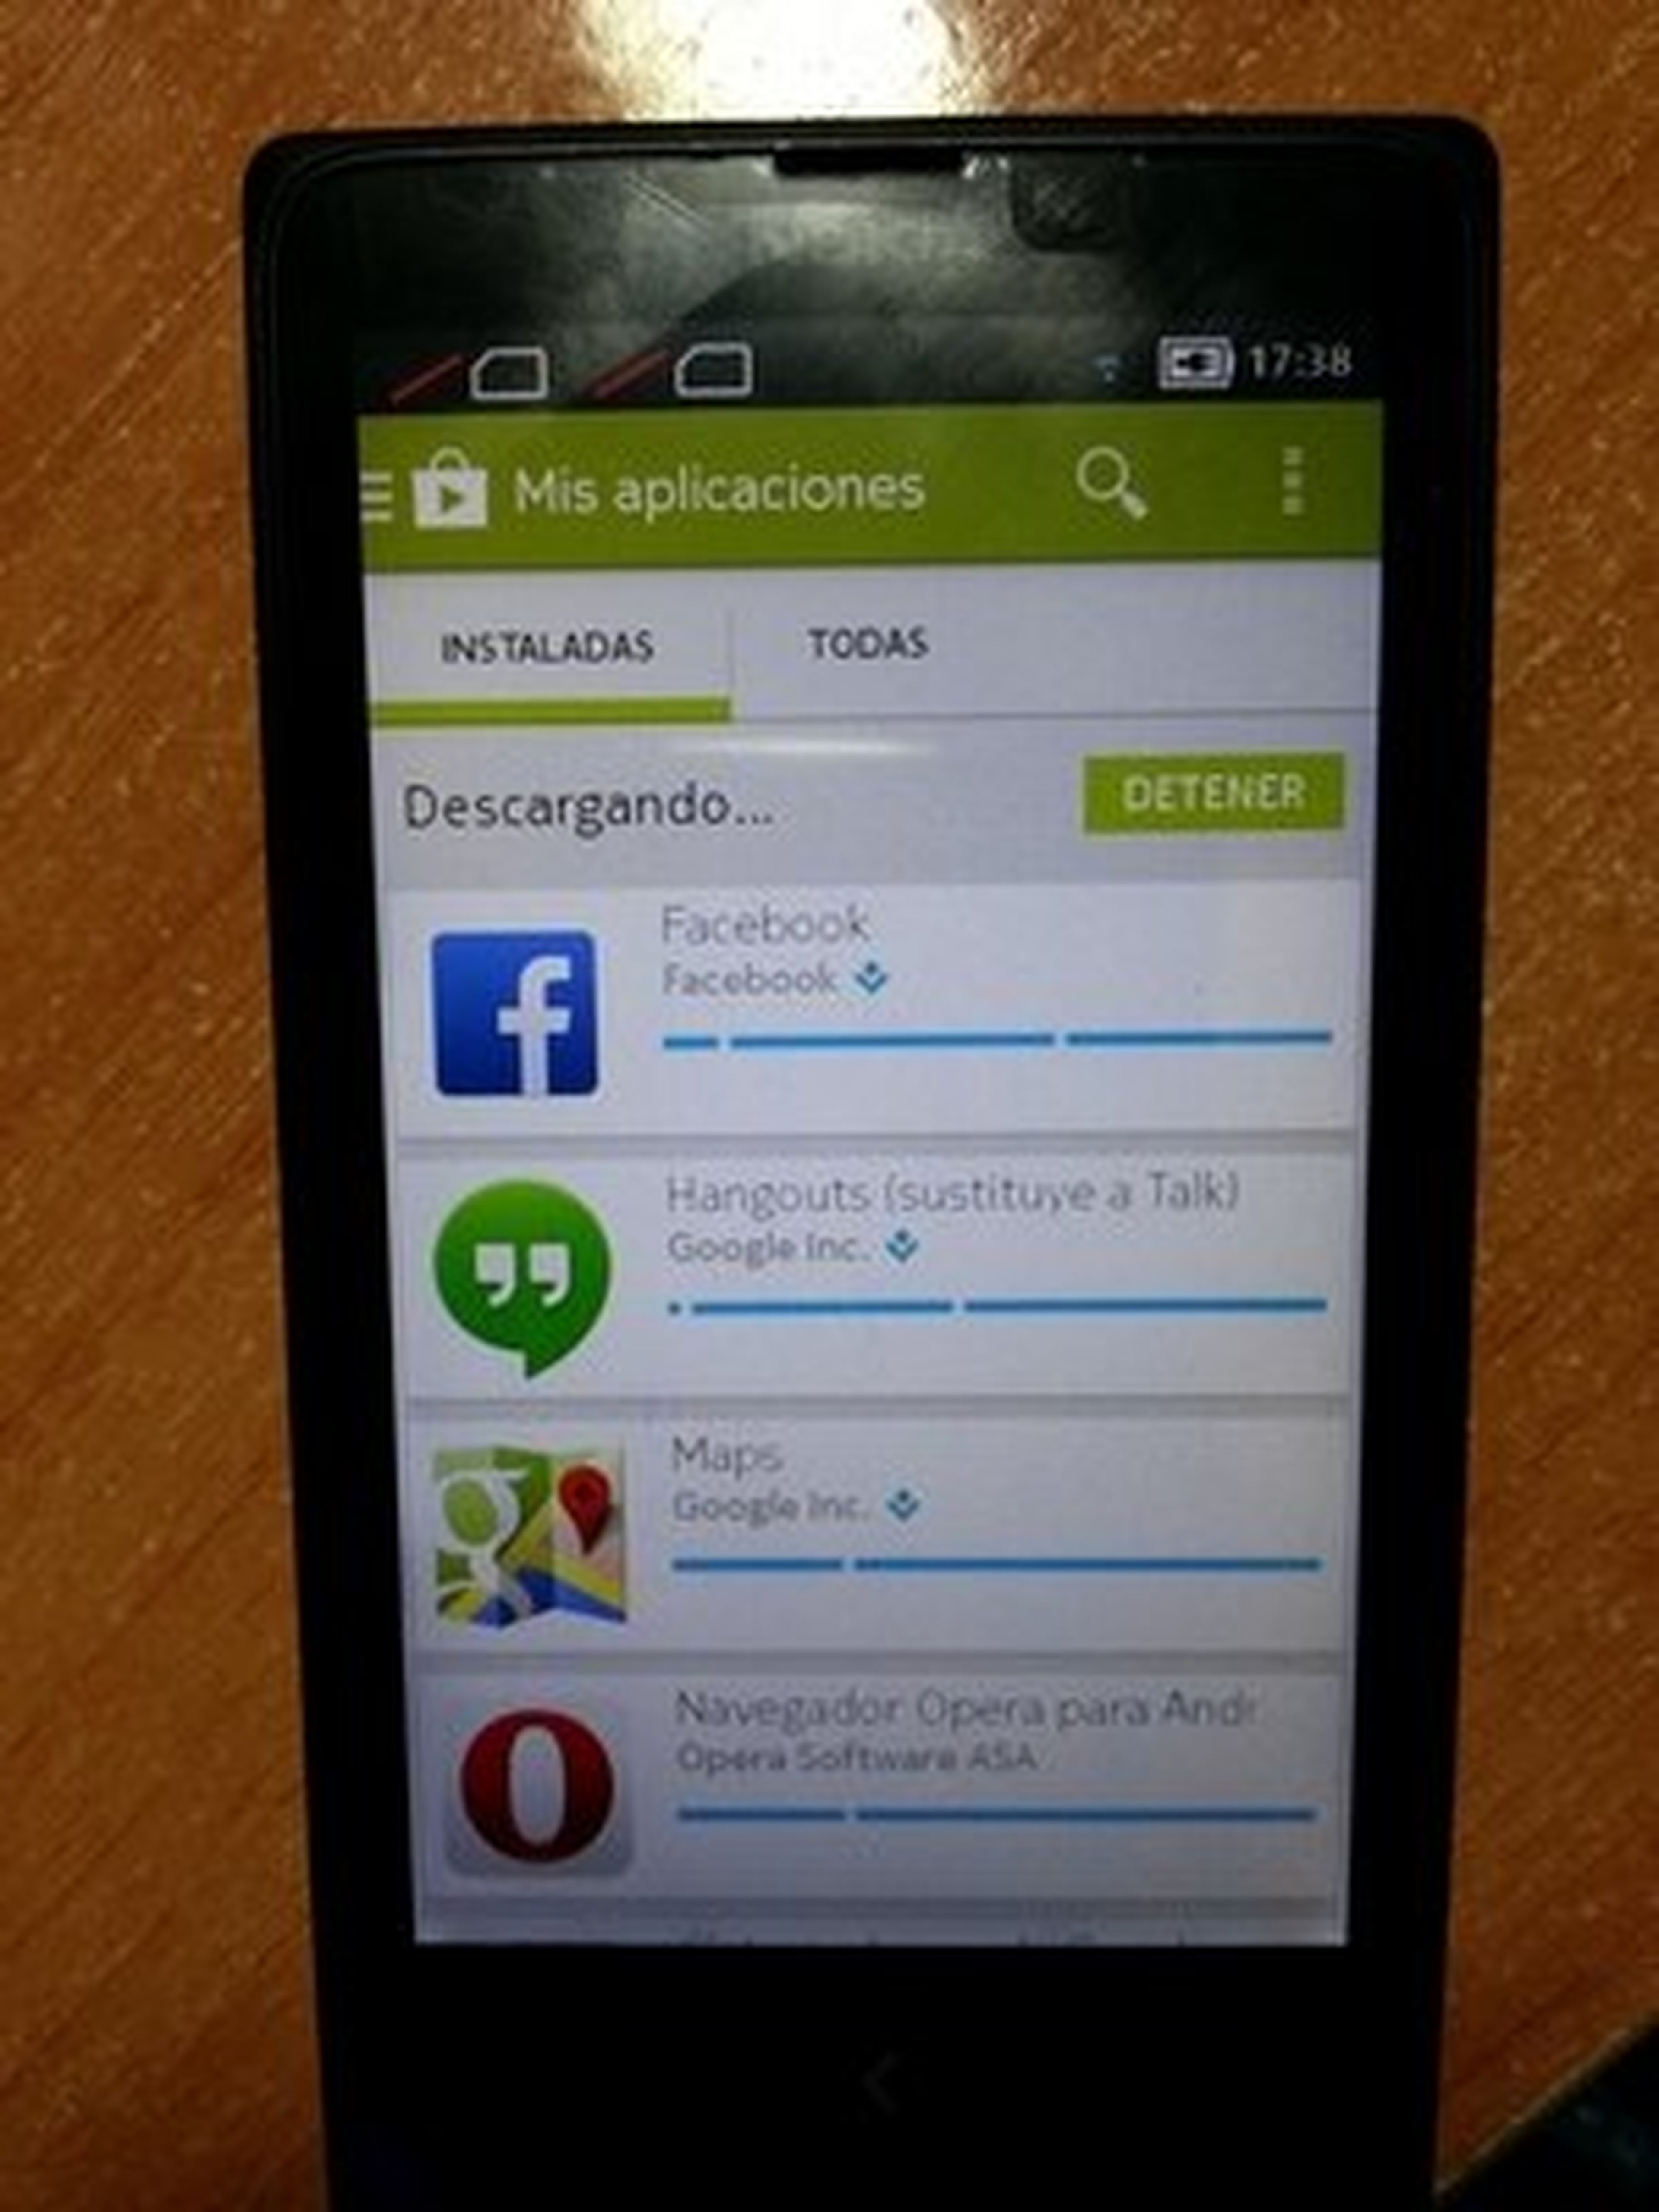 Nokia X ruteado, con Google Play